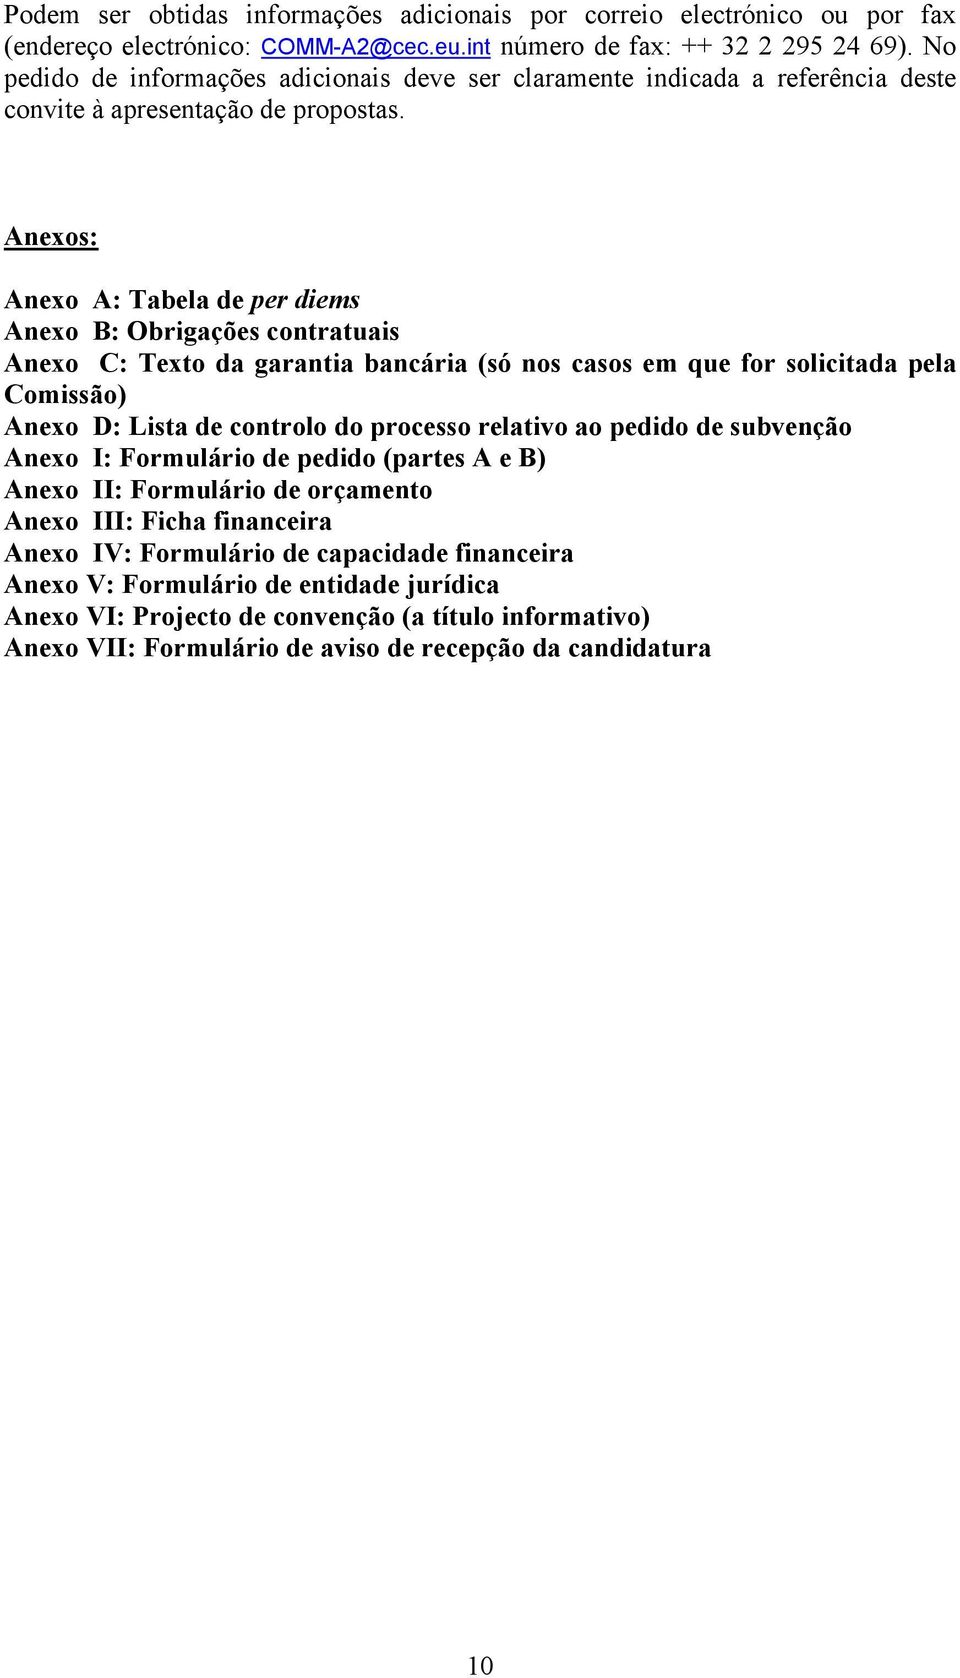 Anexos: Anexo A: Tabela de per diems Anexo B: Obrigações contratuais Anexo C: Texto da garantia bancária (só nos casos em que for solicitada pela Comissão) Anexo D: Lista de controlo do processo